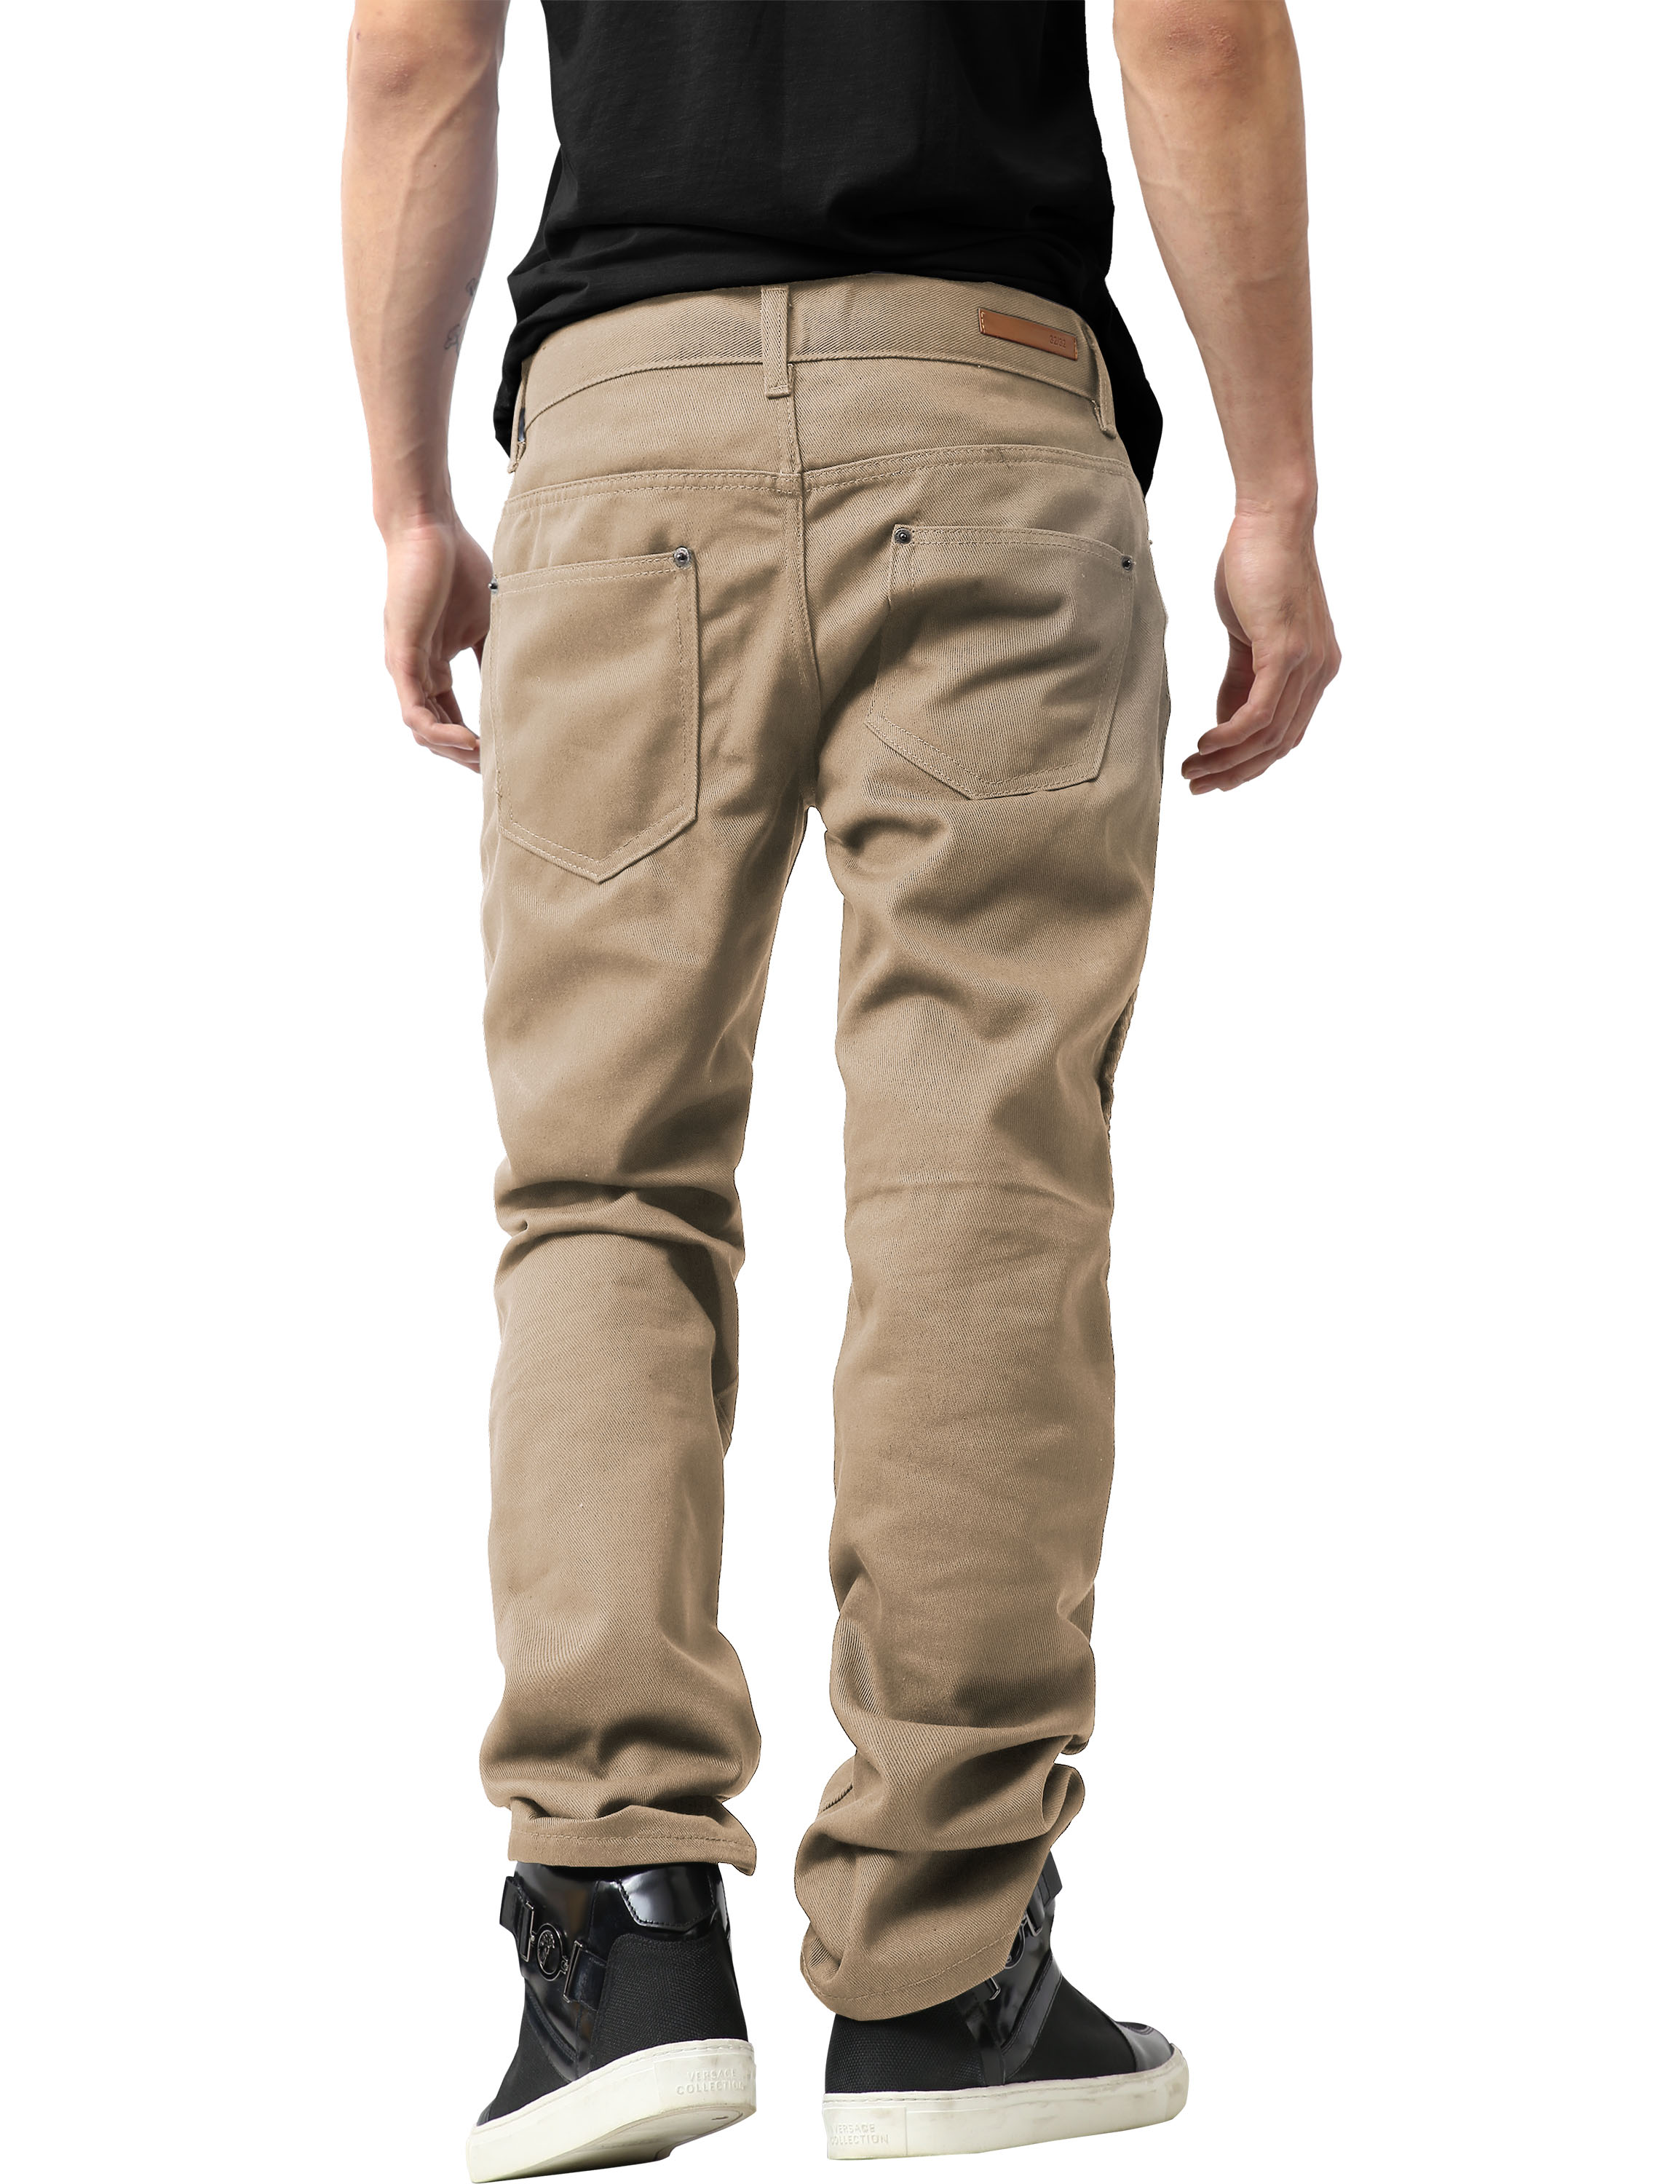 Ma Croix Mens Biker Jeans Slim Straight Fit Denim Distressed Zipper Pants - image 4 of 7